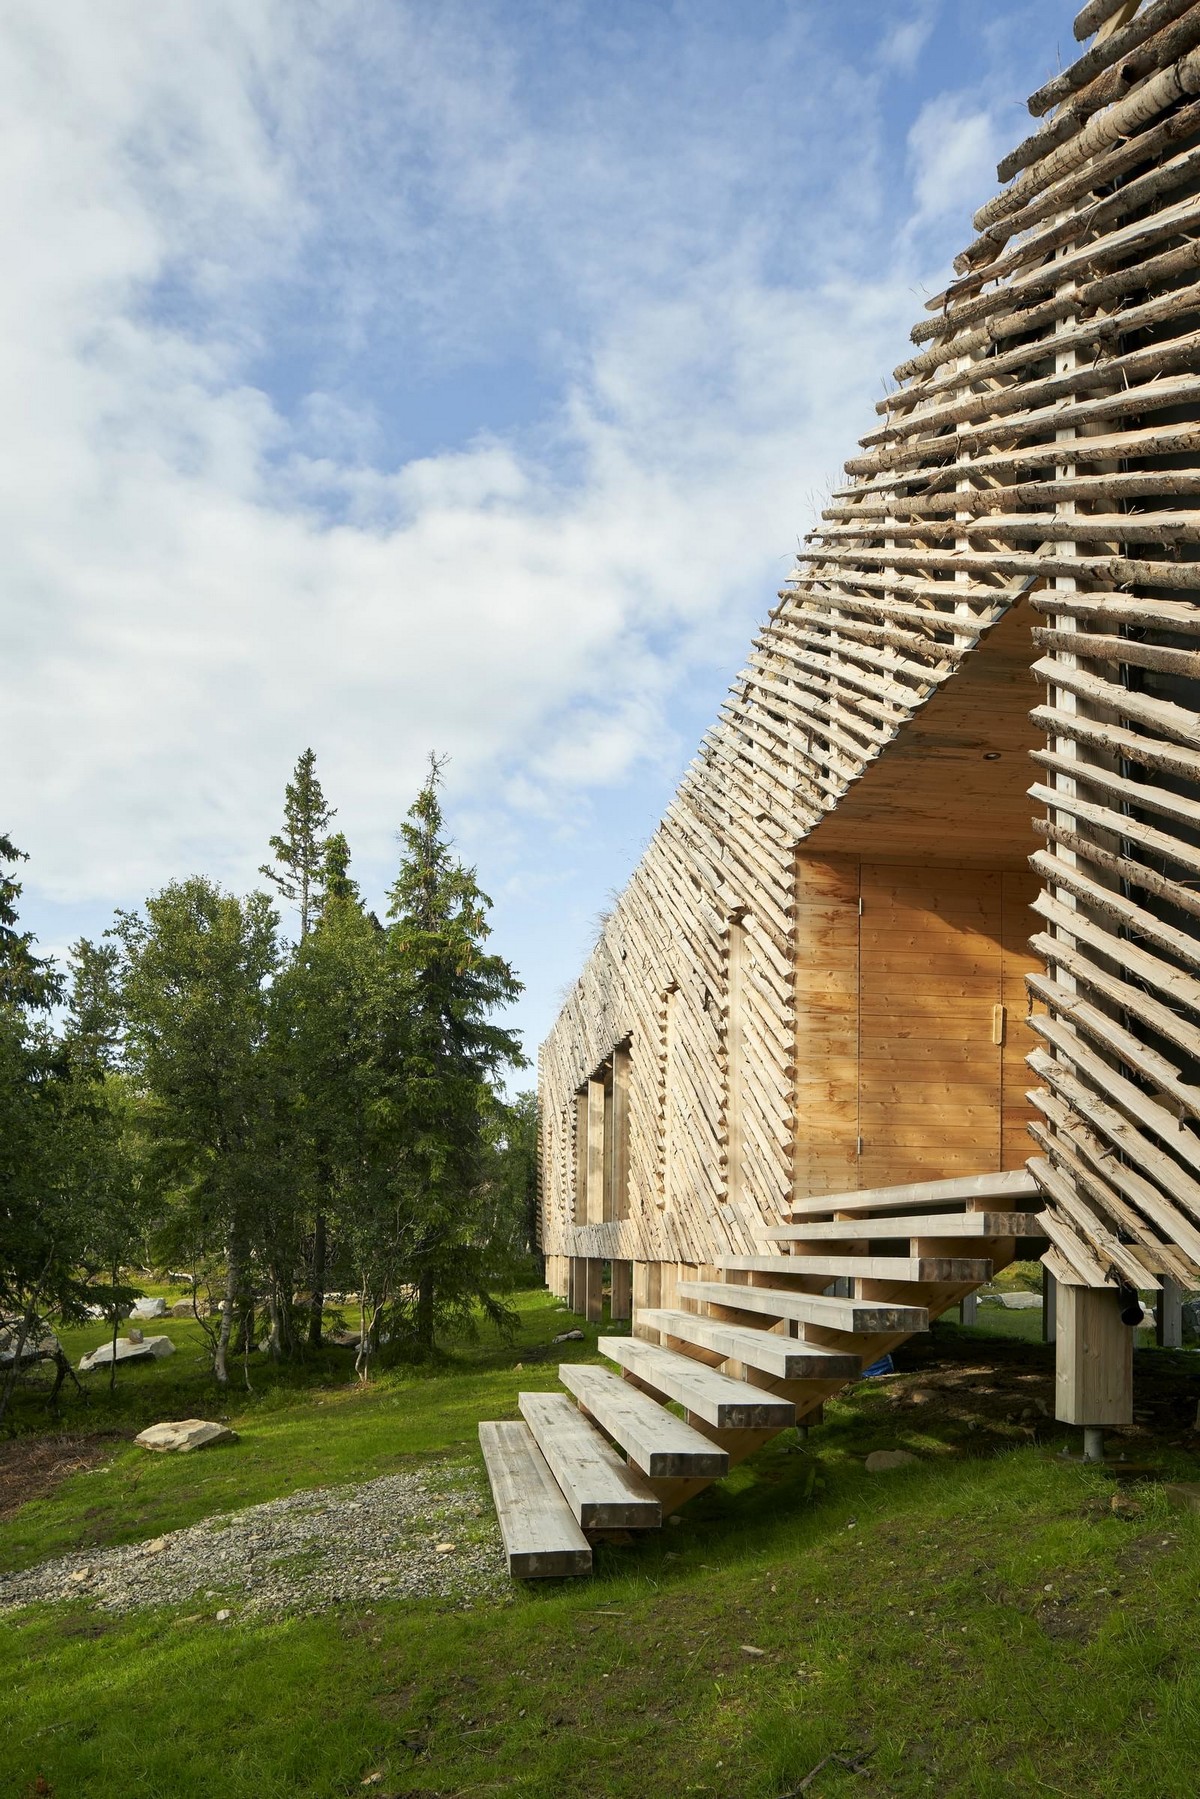 Загородный дом в горах Норвегии часть, полностью, можно, гостиную, иногда, которые, время, дополнительным, домика, Квитфьелла, деревом, которая, Норвегии, является, гладкая, сочетается, шероховатость, отвлекающих, внешнего, факторов